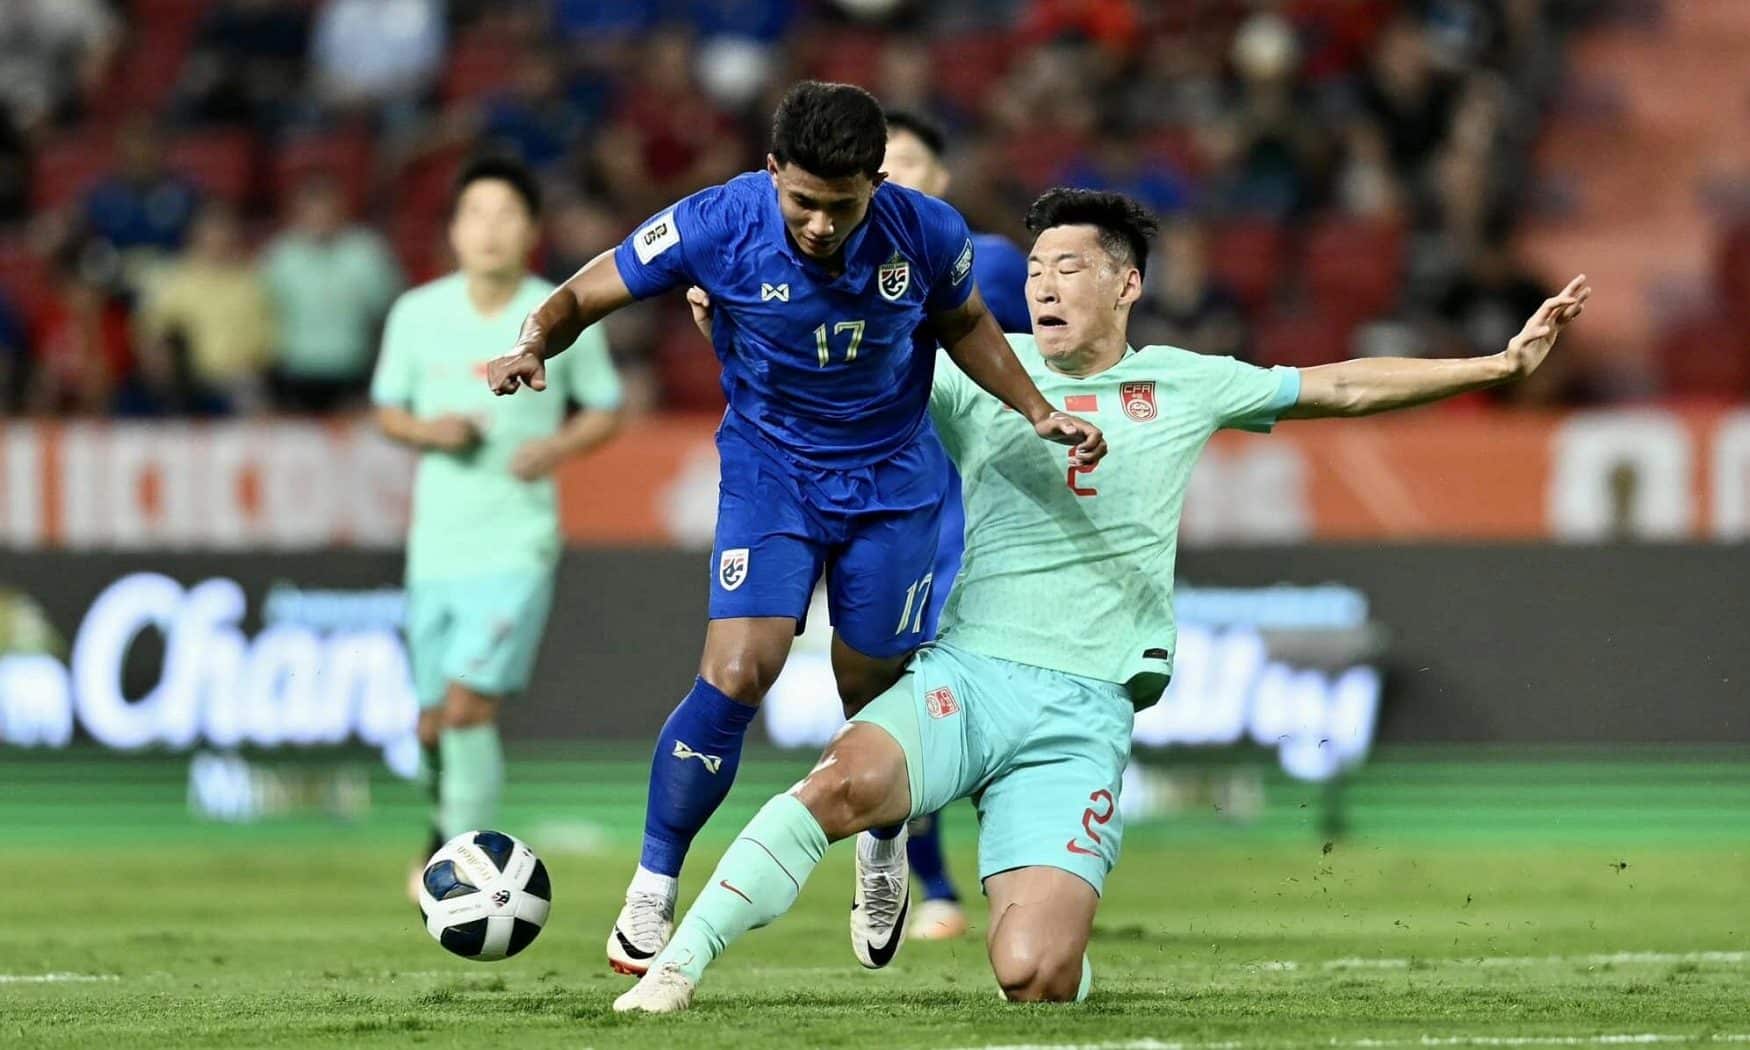 Tiền đạo 21 tuổi Suphanat Mueanta (số 17) để mất bóng trong trận Thái Lan thua Trung Quốc 1-2 trên sân Rajamangala, thành phố Bangkok, ở vòng loại World Cup 2026 tối 16/10/2023. Ảnh: Changsuek